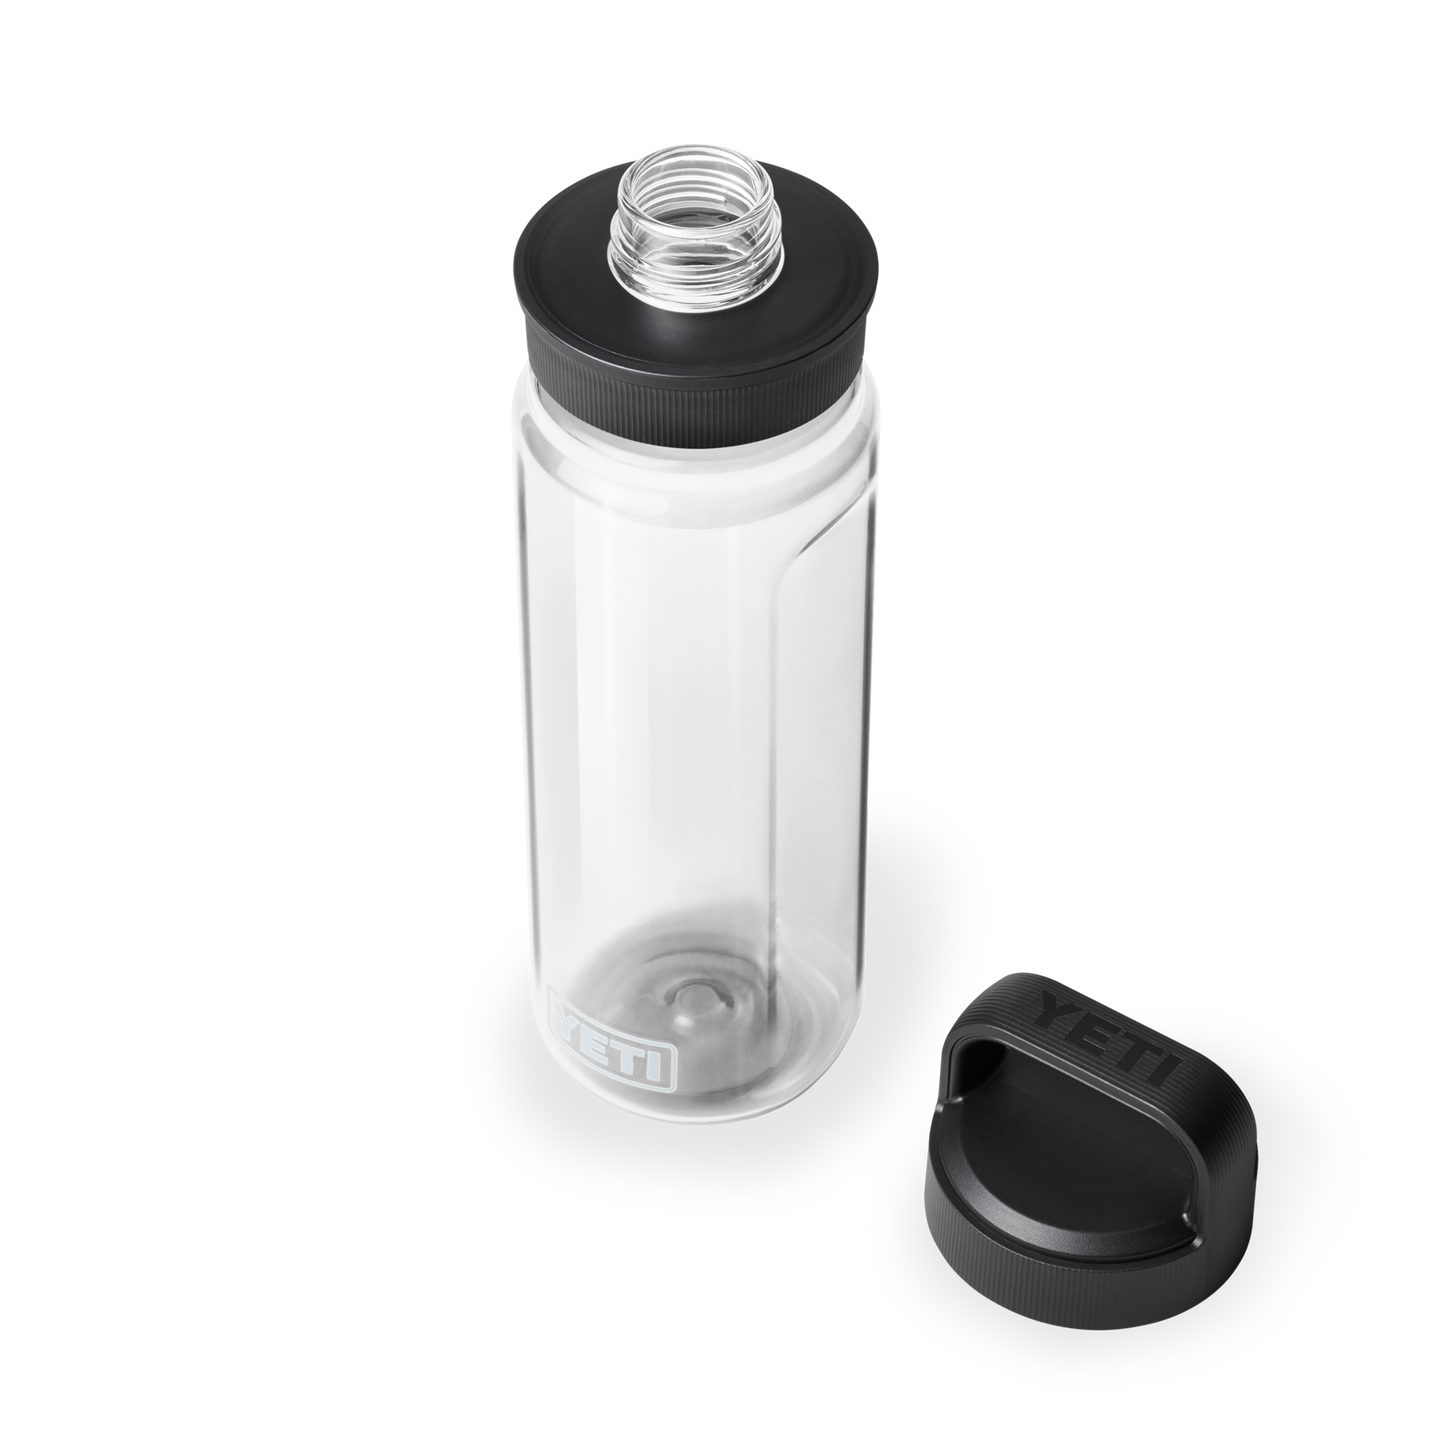 YETI Yonder™ 25 Oz (750 ml) Wasserflasche Clear